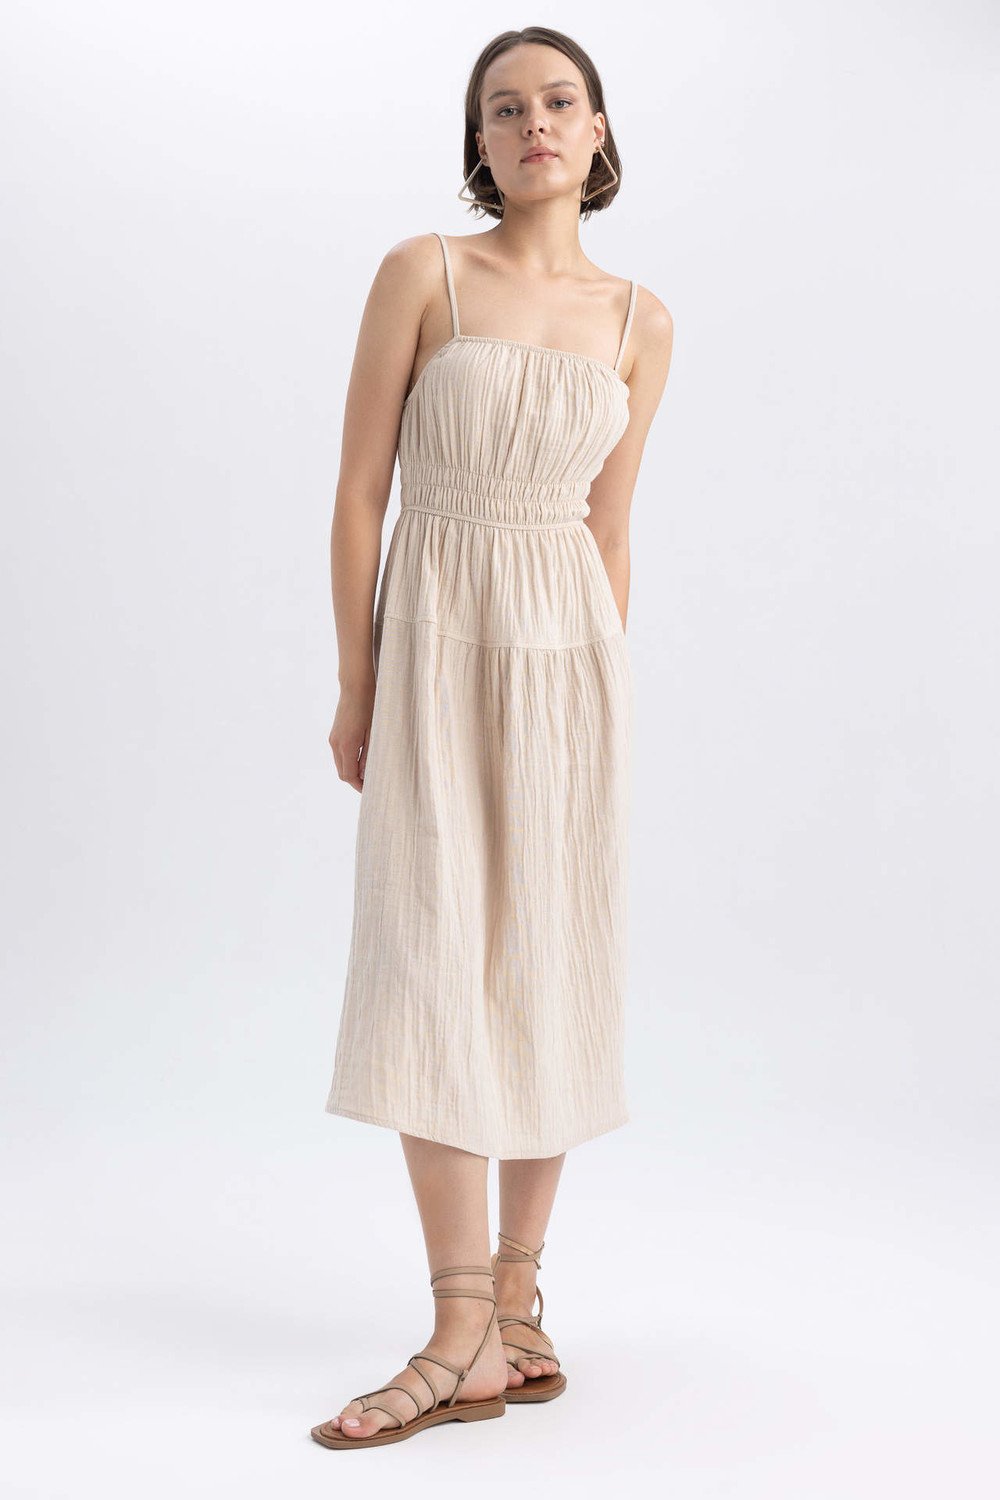 DEFACTO A Cut Strapless Muslin Maxi Short Sleeve Woven Dress